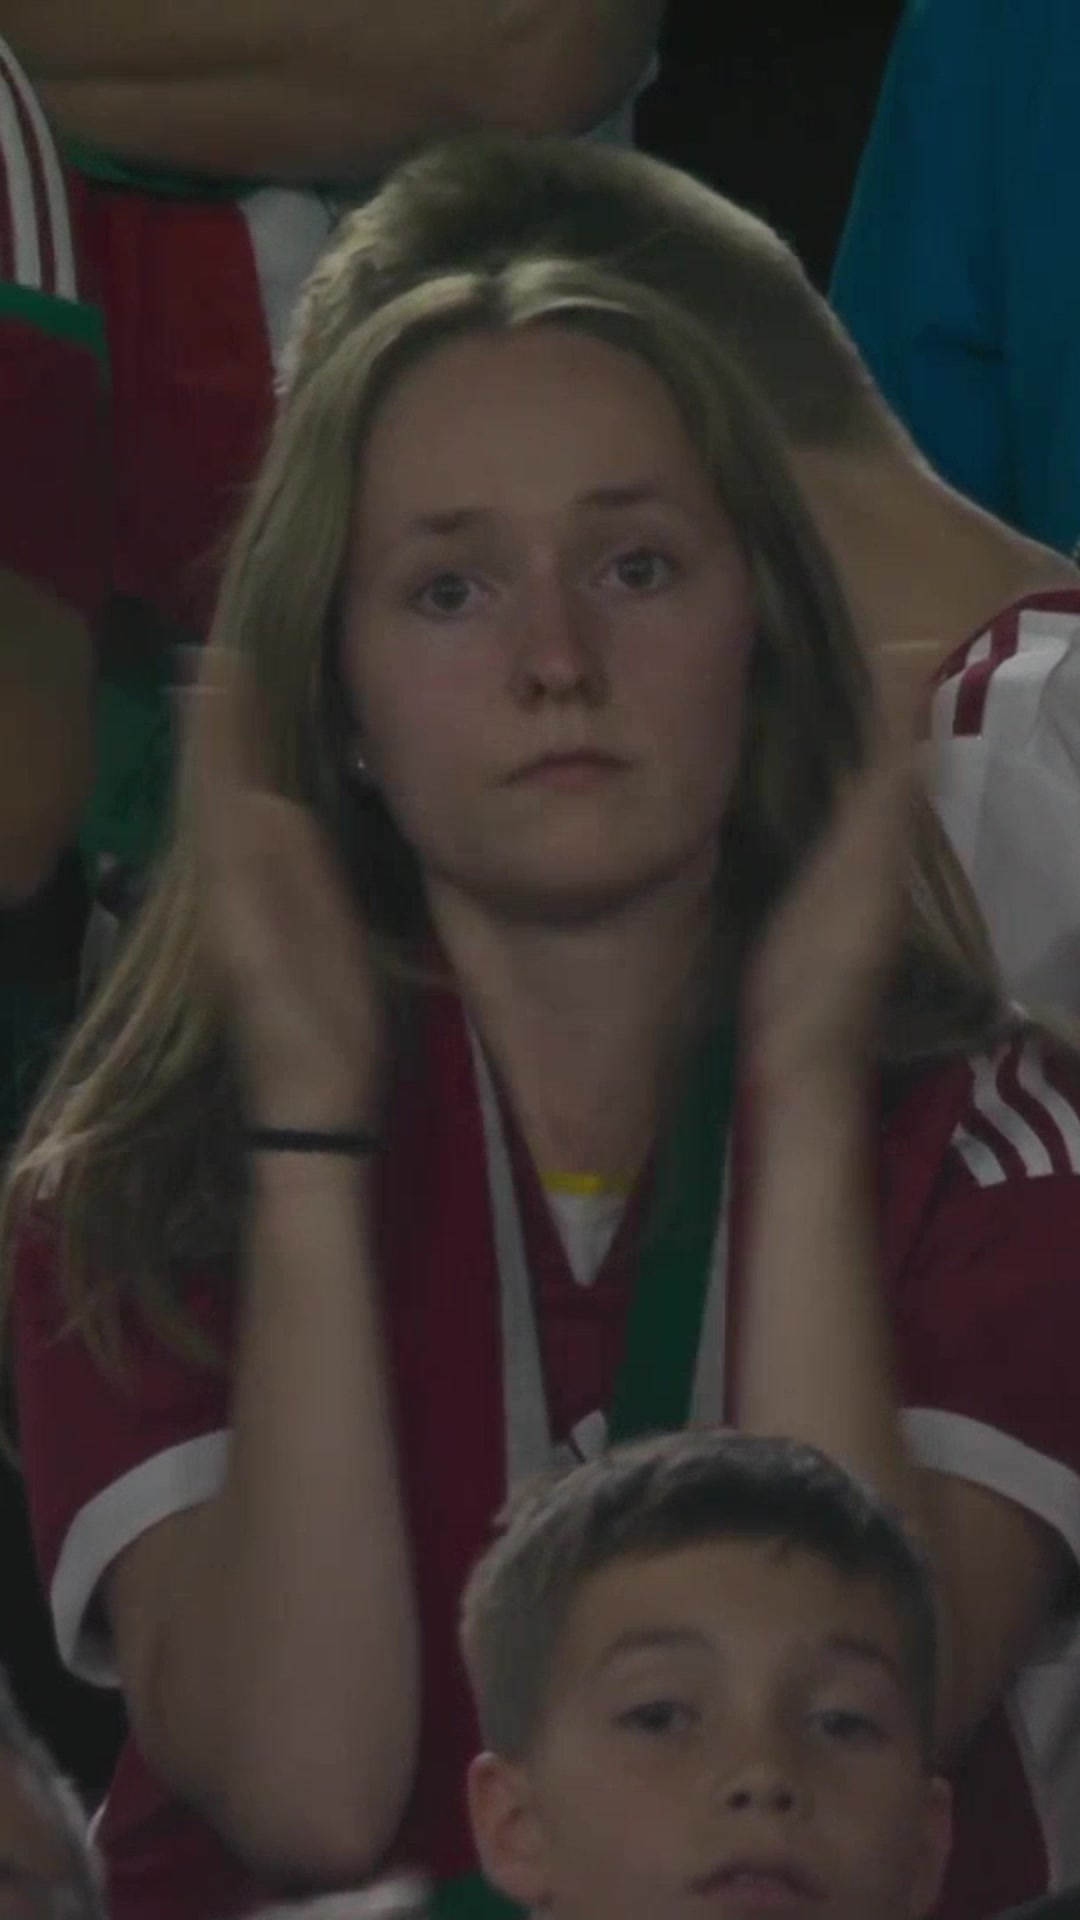 匈牙利前锋被担架抬出场，女球迷看台捂嘴担心+鼓掌鼓励